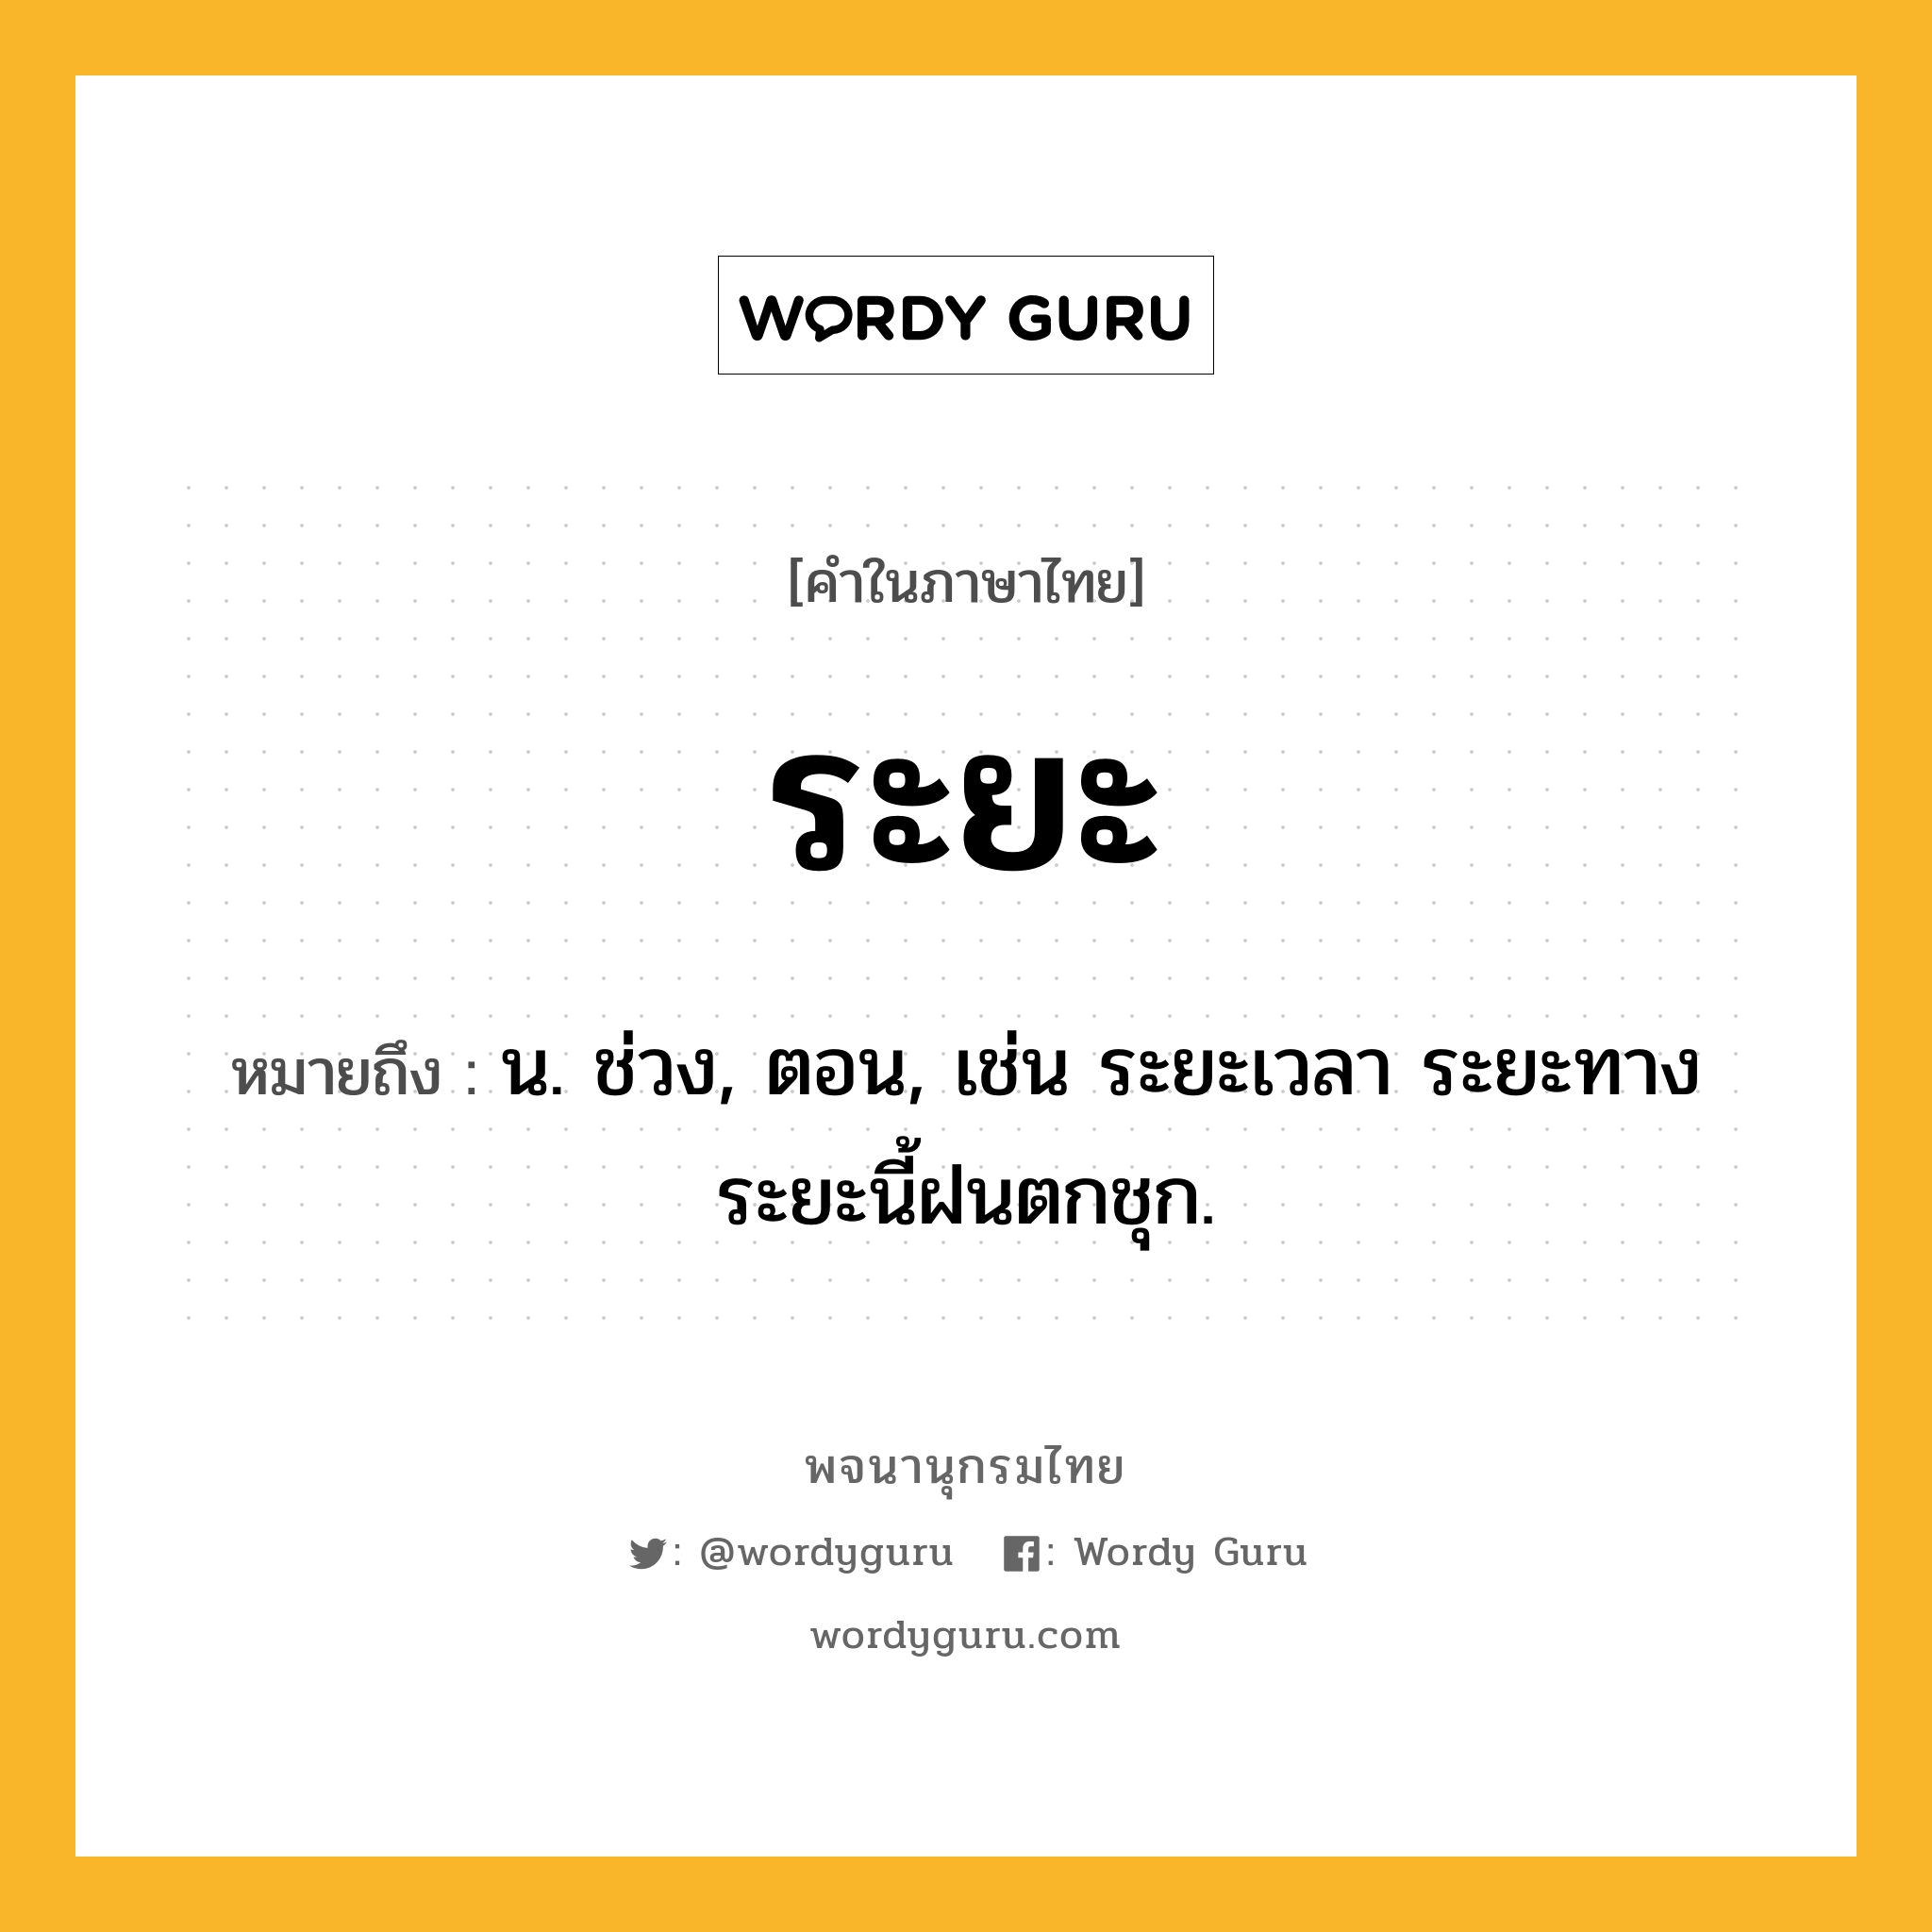 ระยะ ความหมาย หมายถึงอะไร?, คำในภาษาไทย ระยะ หมายถึง น. ช่วง, ตอน, เช่น ระยะเวลา ระยะทาง ระยะนี้ฝนตกชุก.